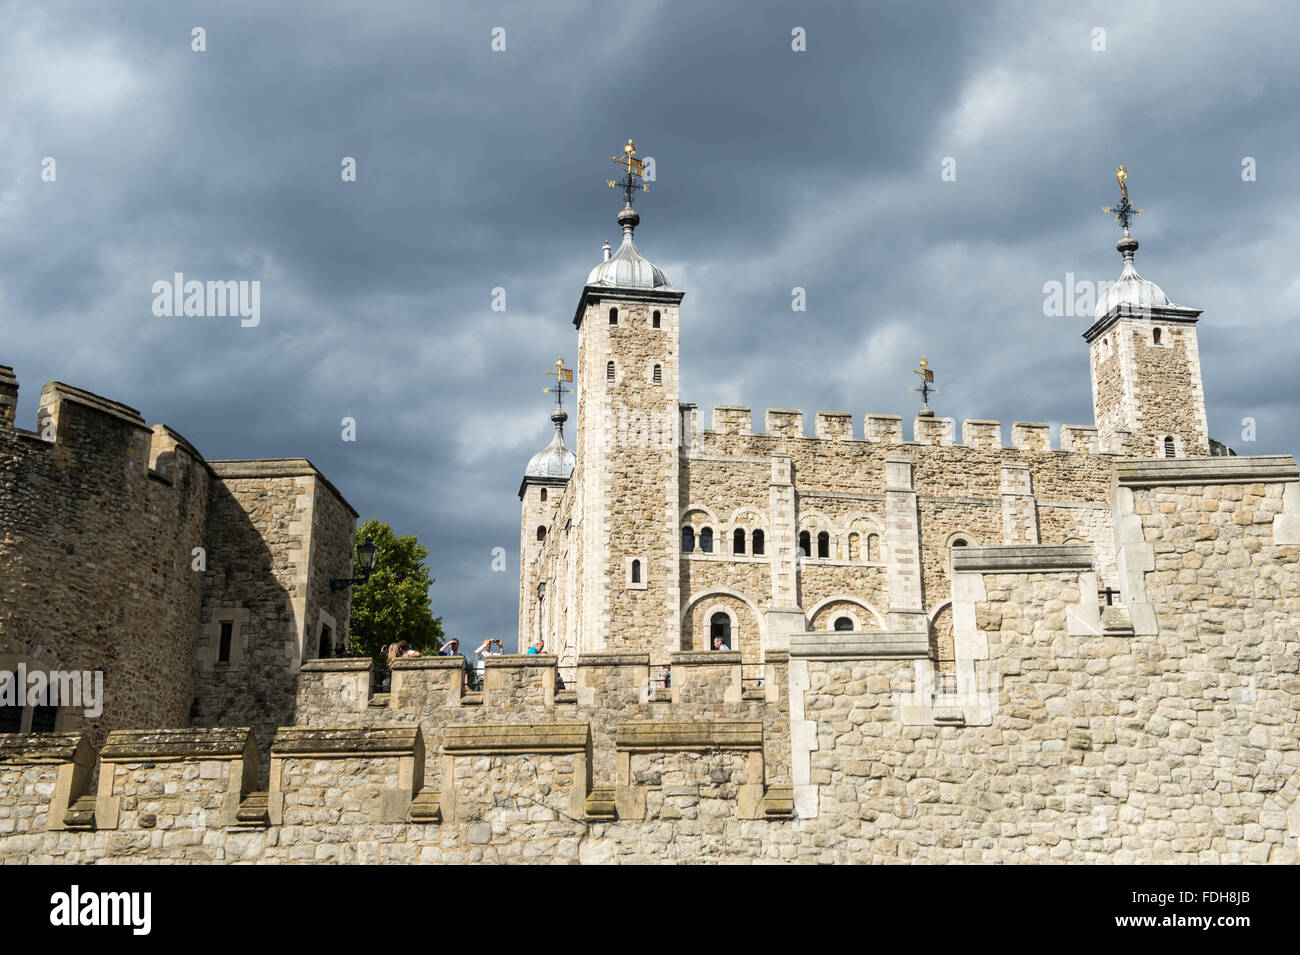 Tower von London in England, Großbritannien. Stockfoto